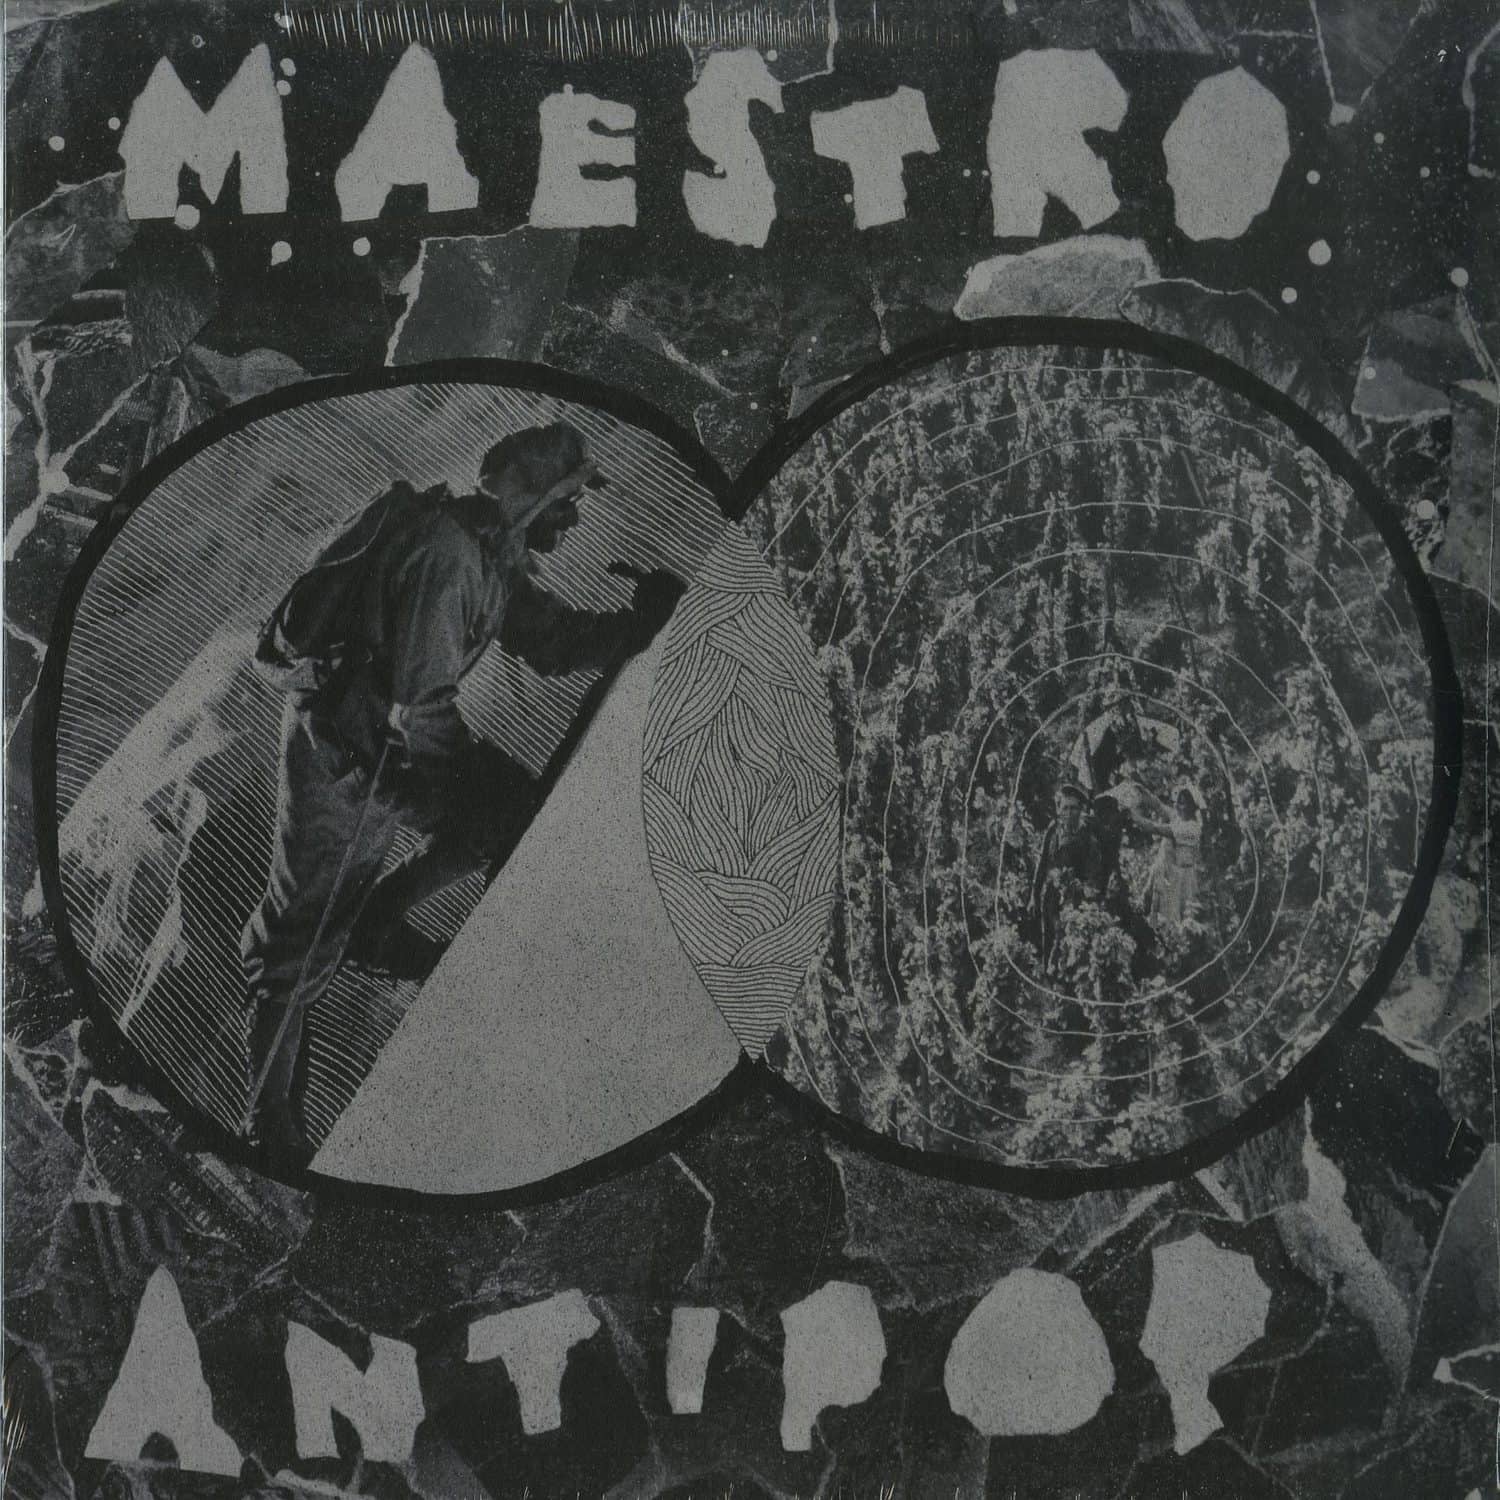 T9 - MAESTRO / ANTIPOP 